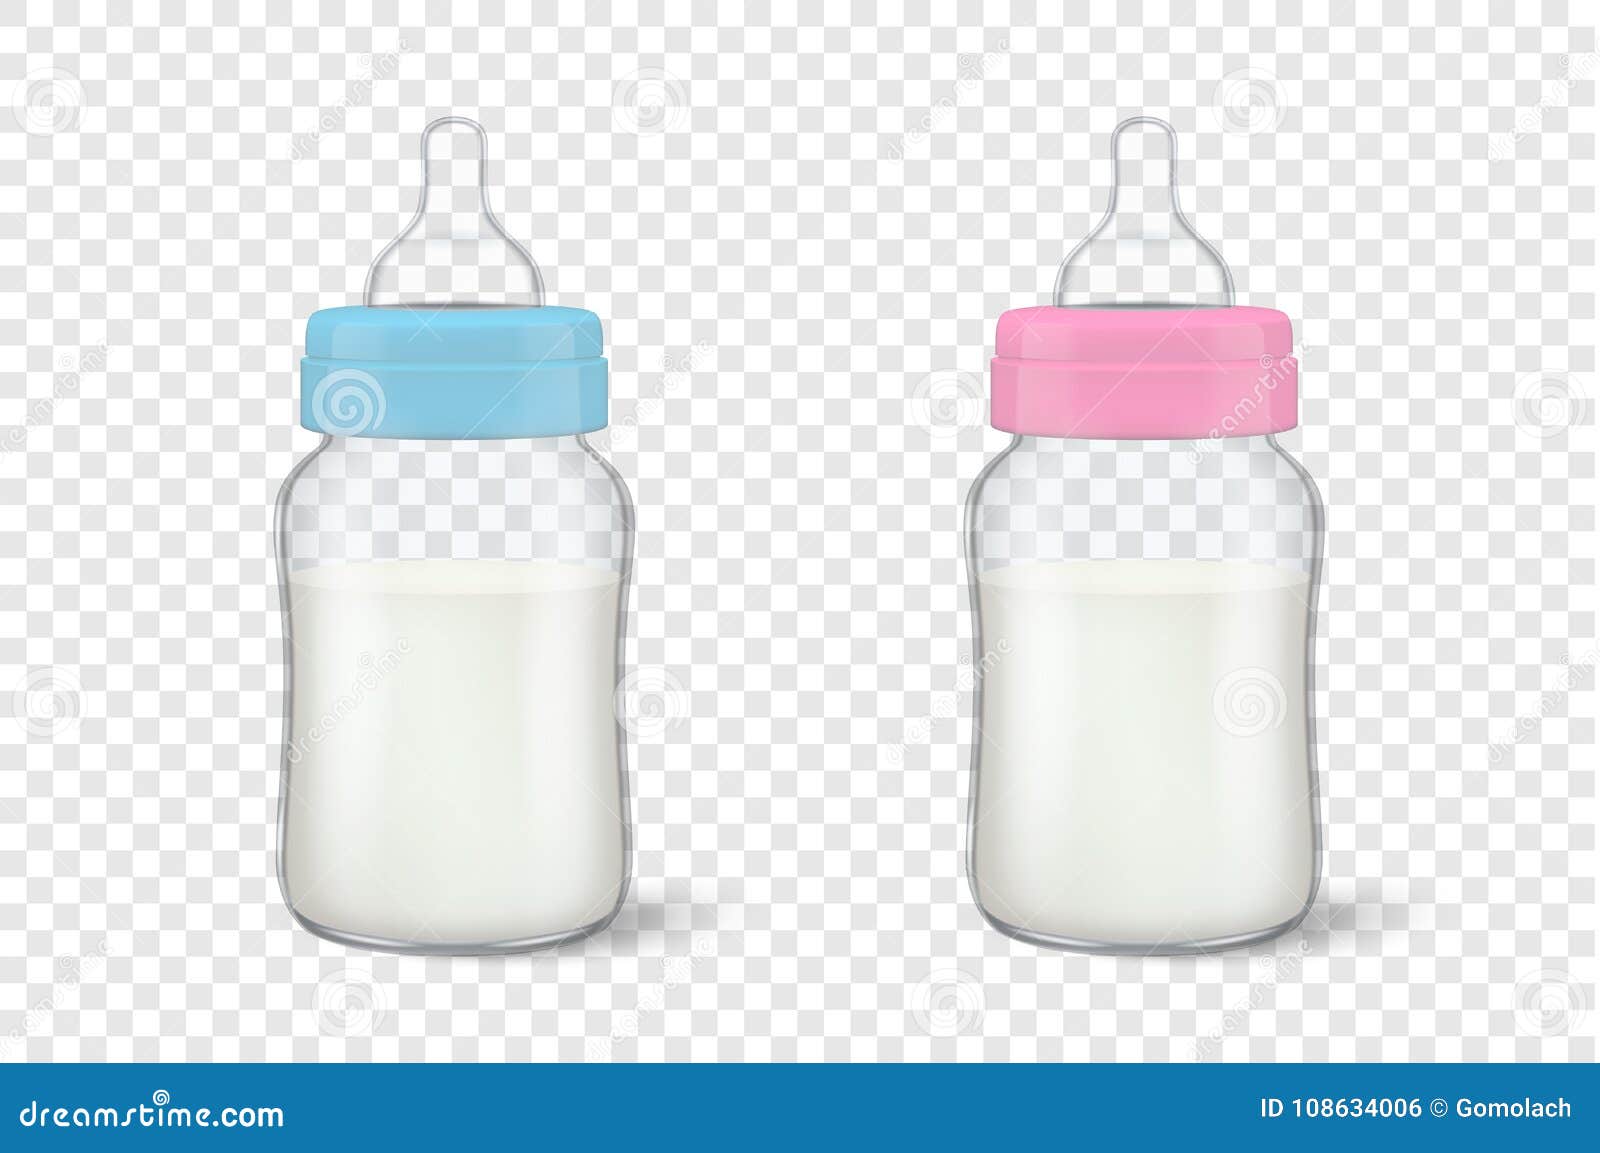 Съесть бутылочку. Бутылочки с сосками. Бутылочка для кормления новорожденных на белом фоне. Бутылочка для кормления новорожденного на белом фоне. Бутылочка для кормления нарисованная.